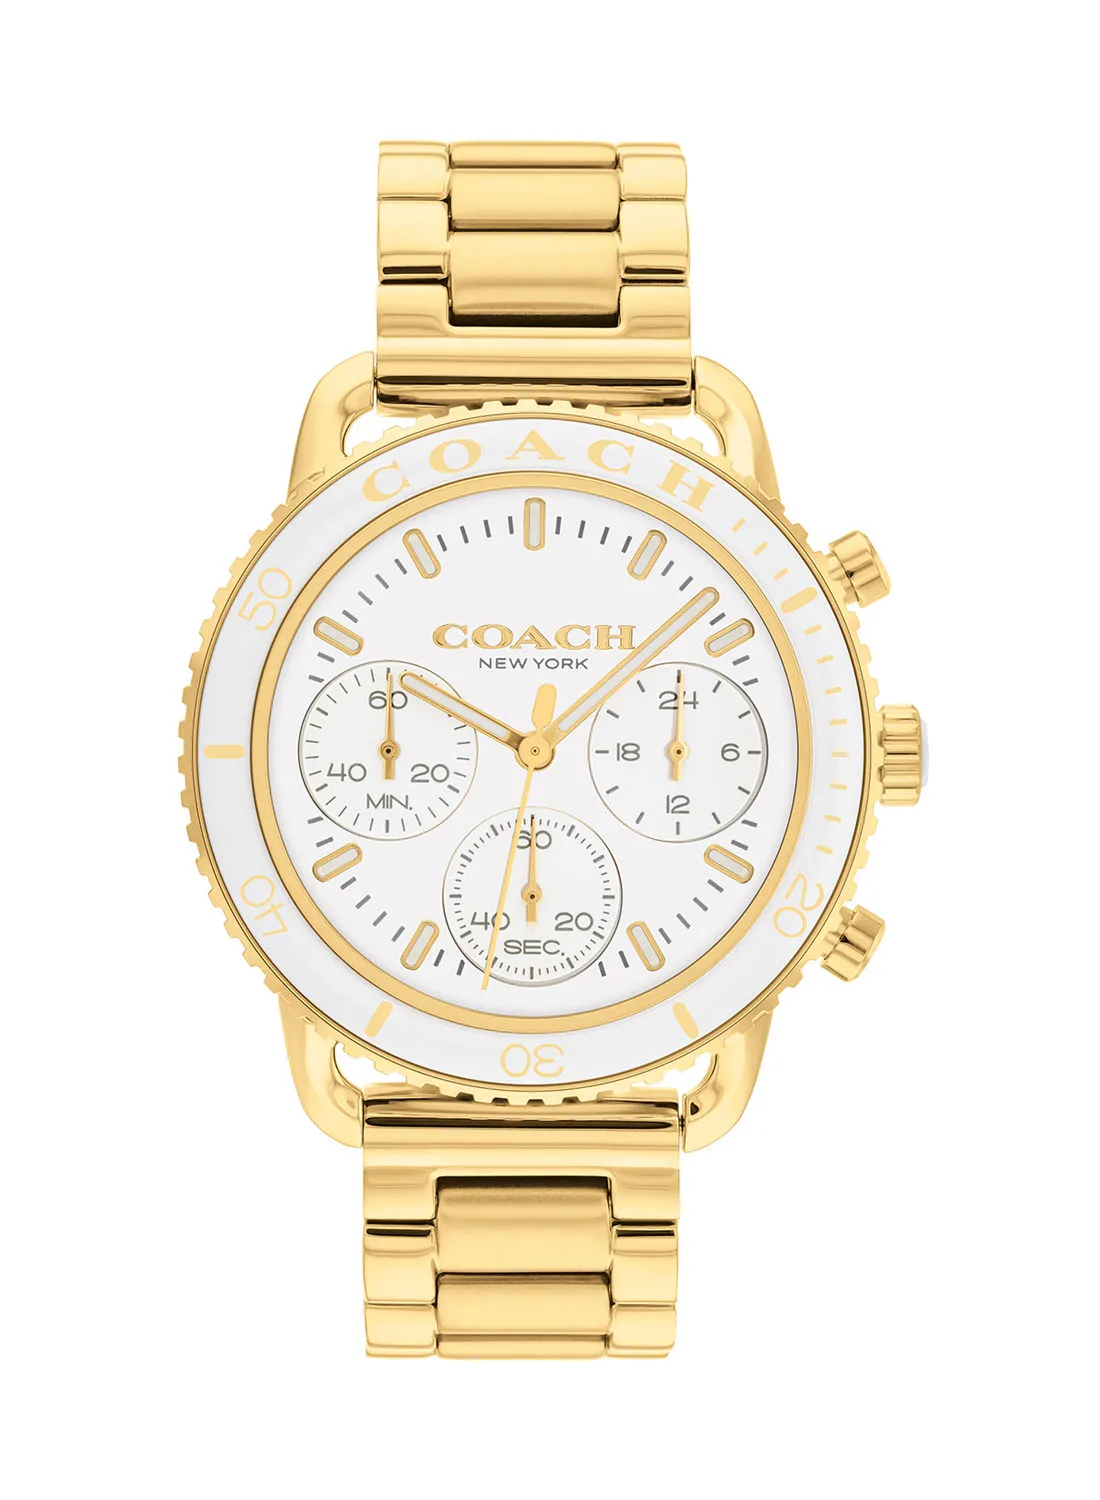 COACH Watches Cruiser Women's Stainless Steel Wrist Watch - 14504051